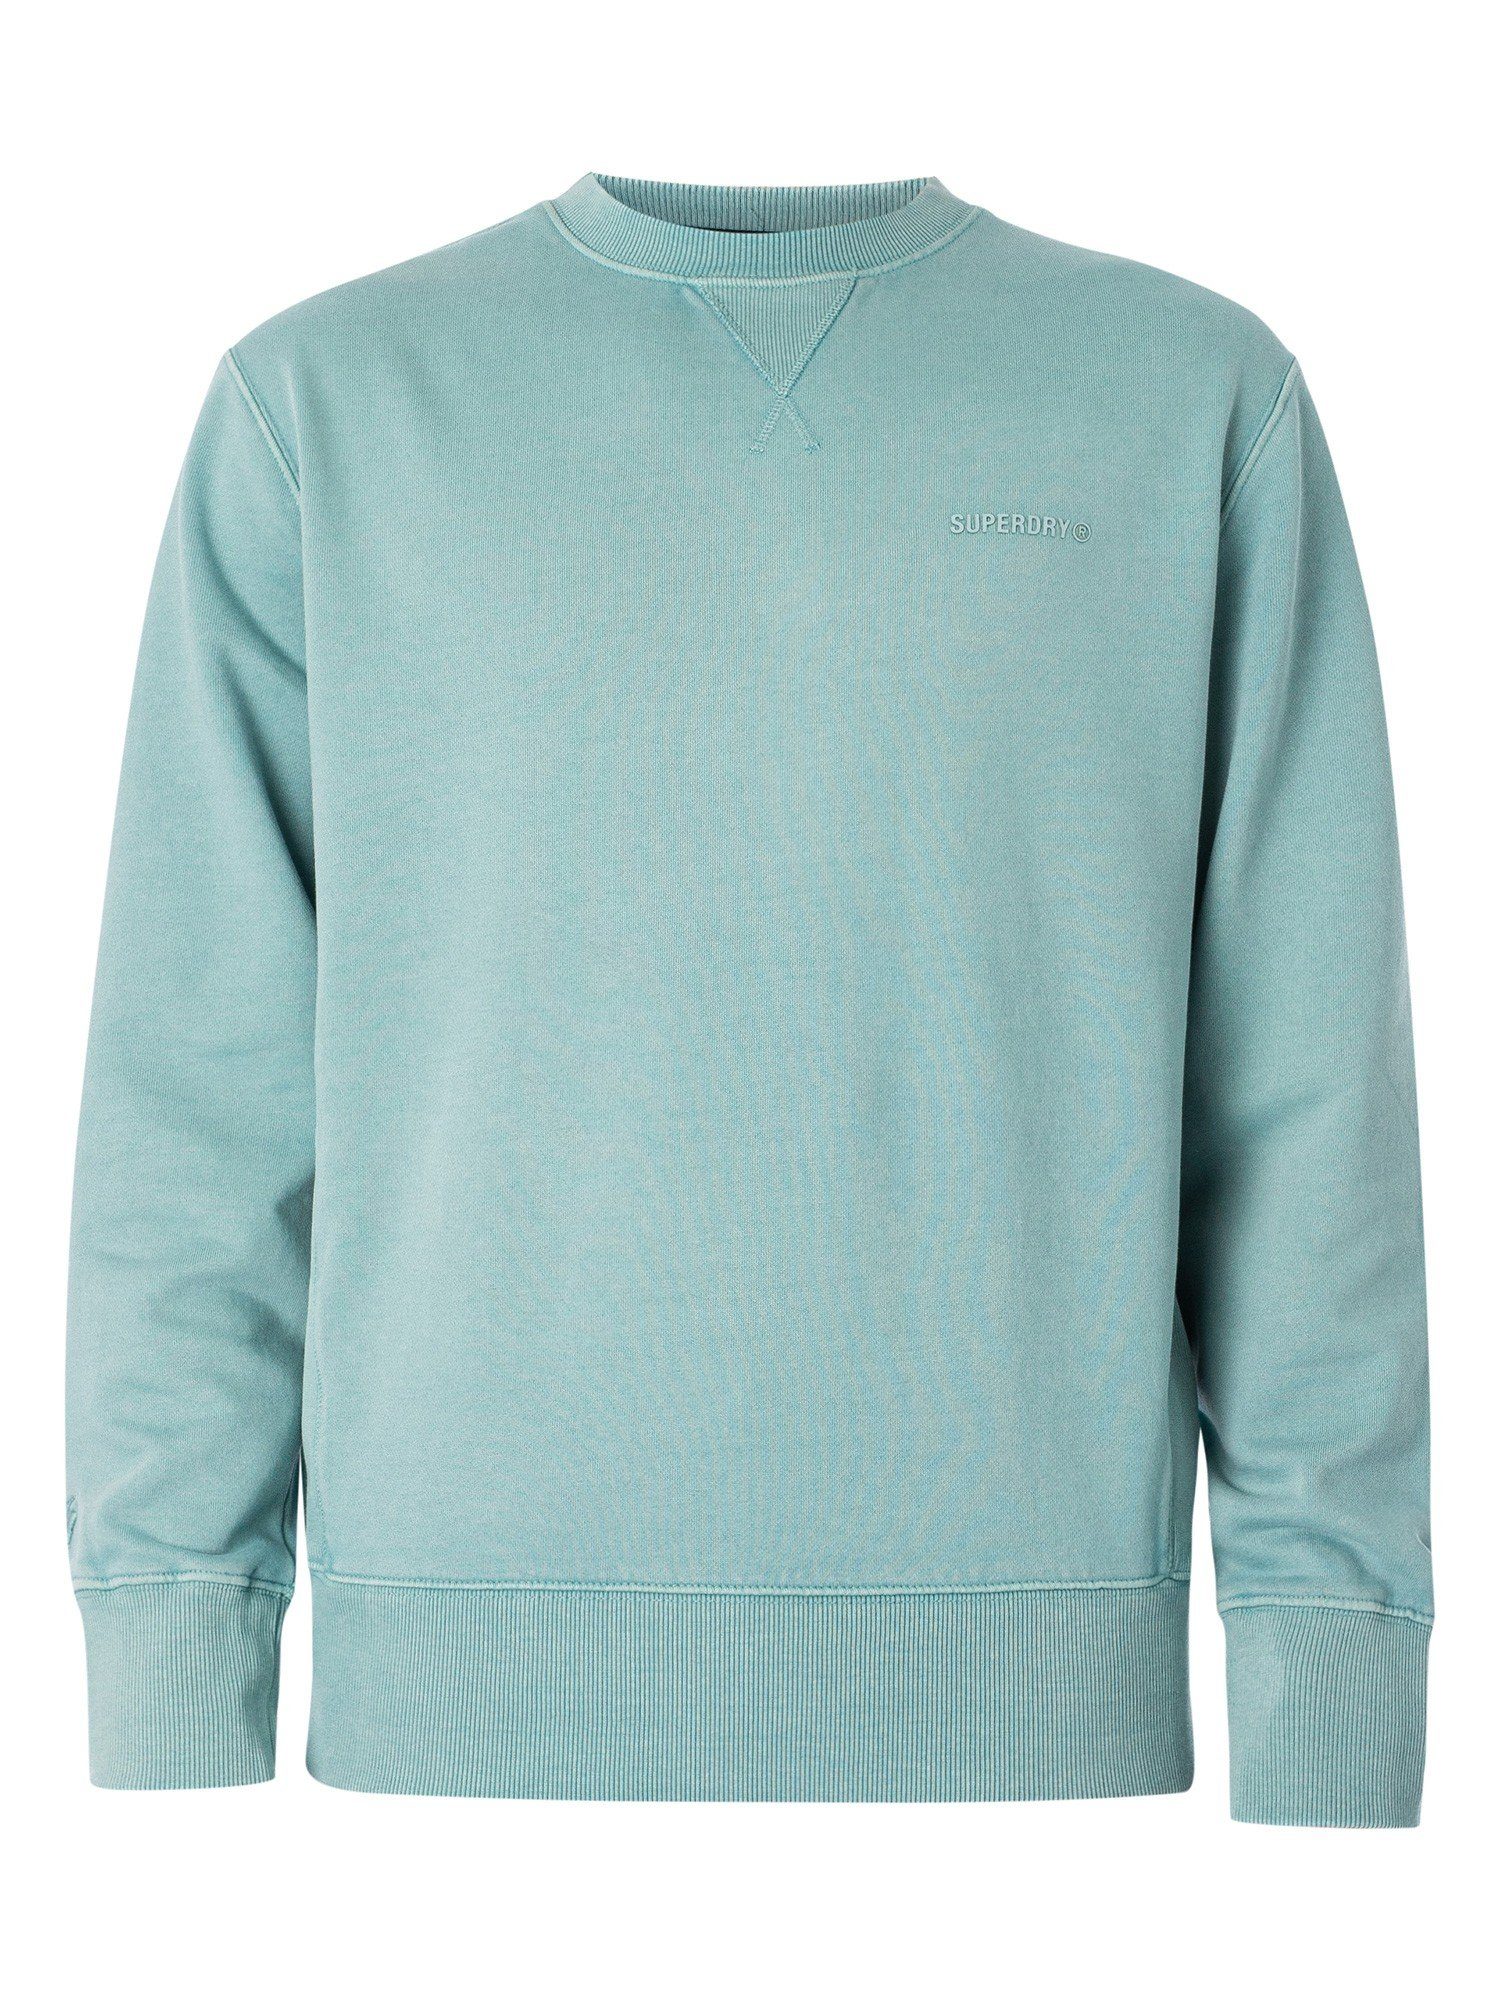 Superdry Sweatshirt mit Pullover Sweatshirt hellblau Rundhalsausschnitt